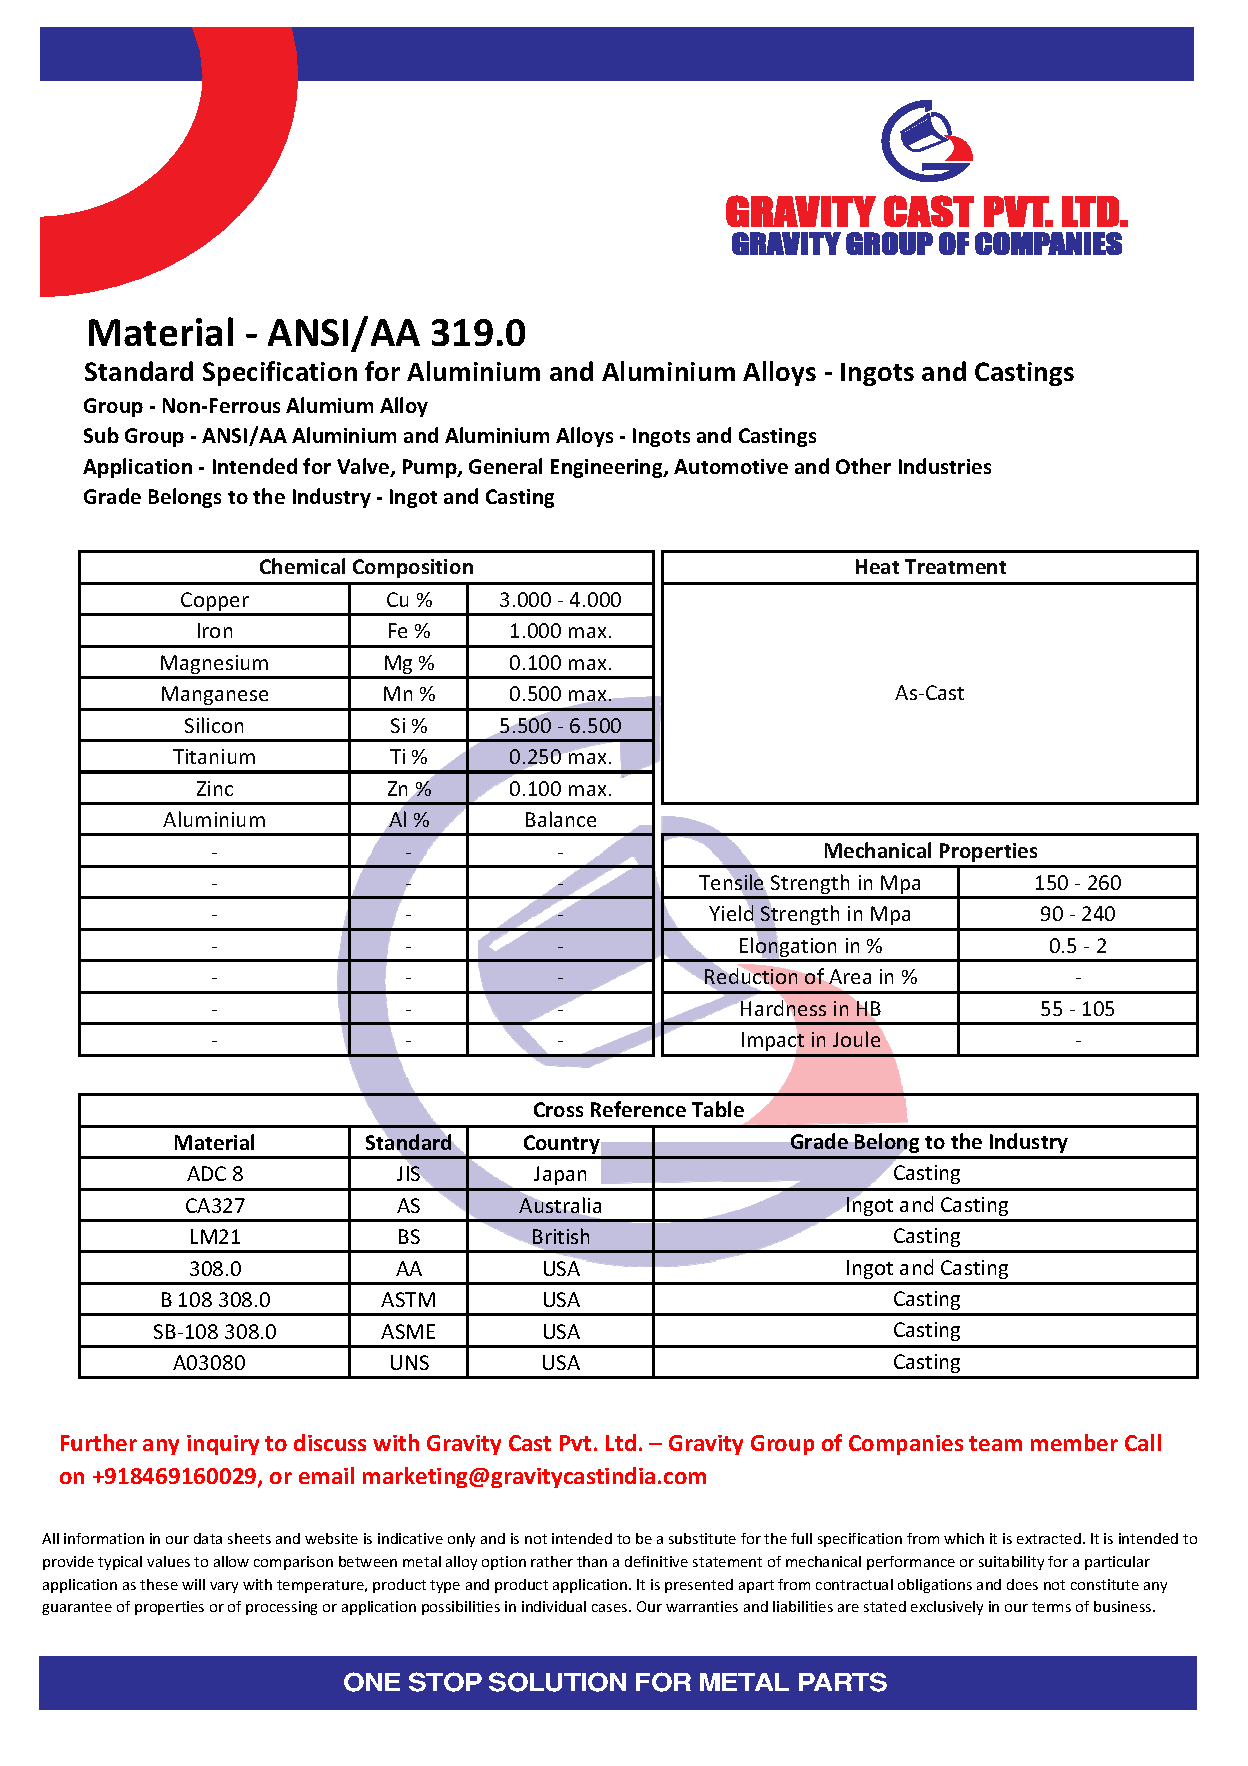 ANSI_AA 319.0.pdf